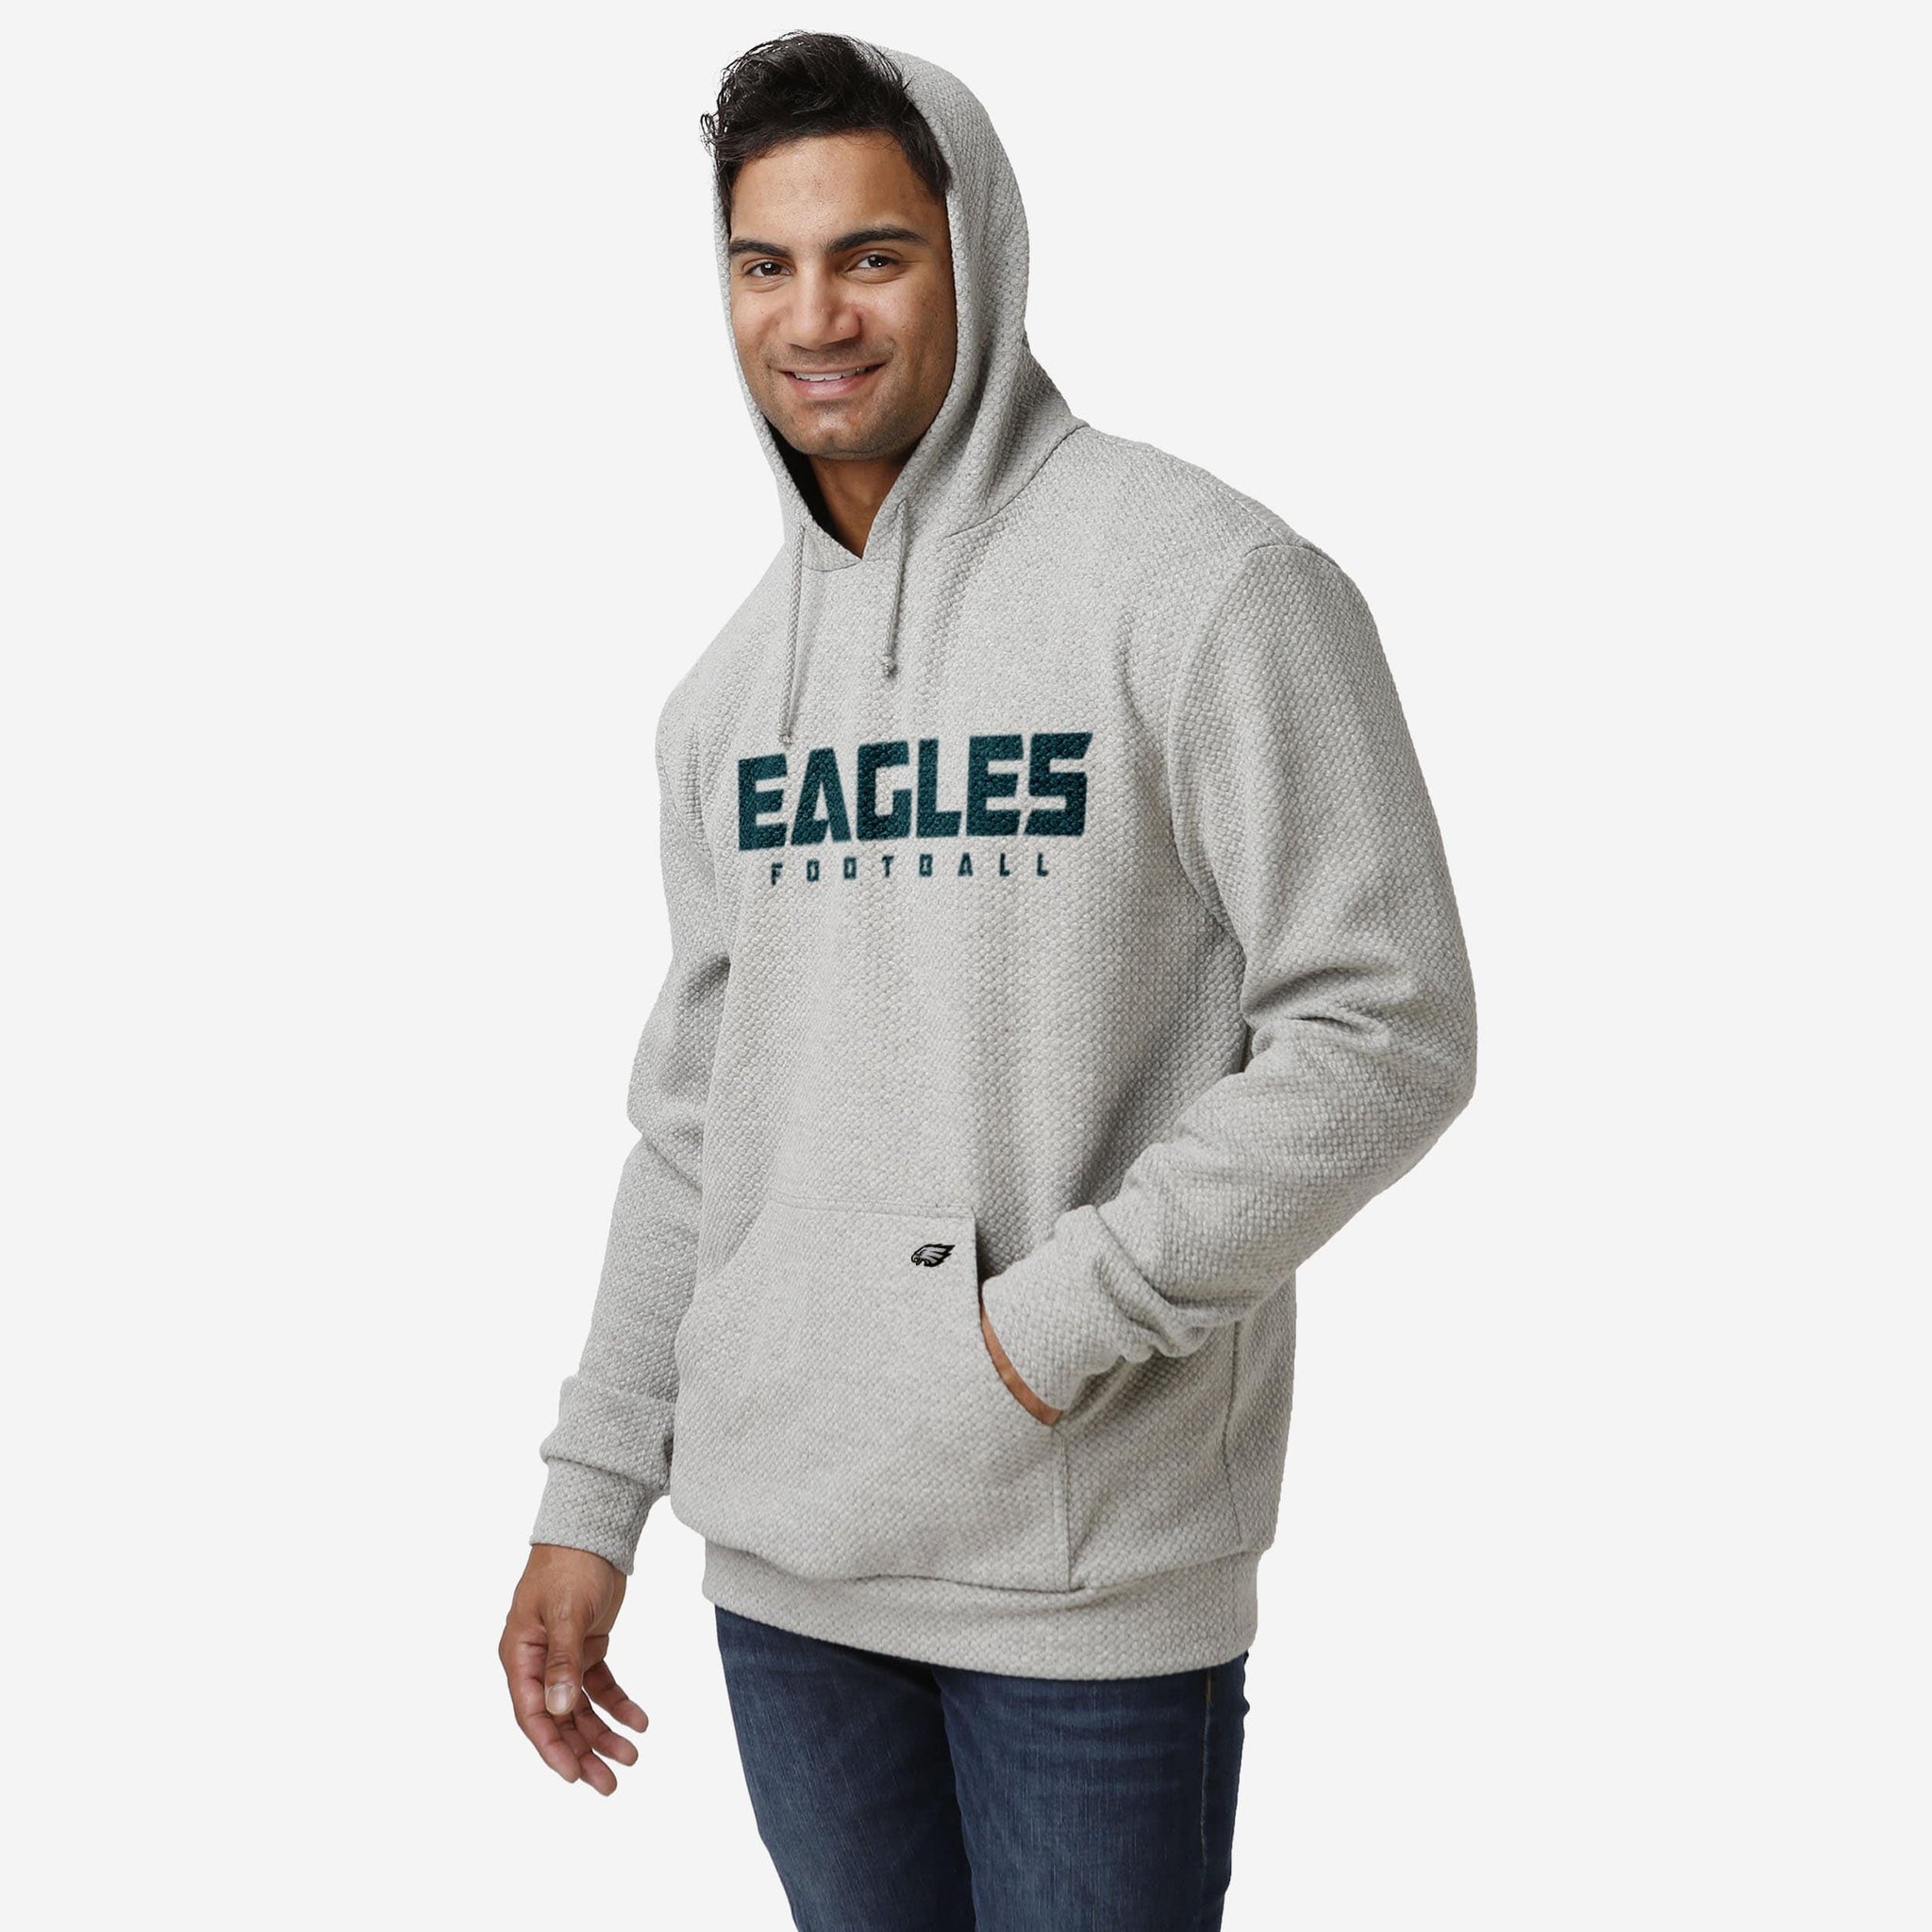 grey philadelphia eagles hoodie